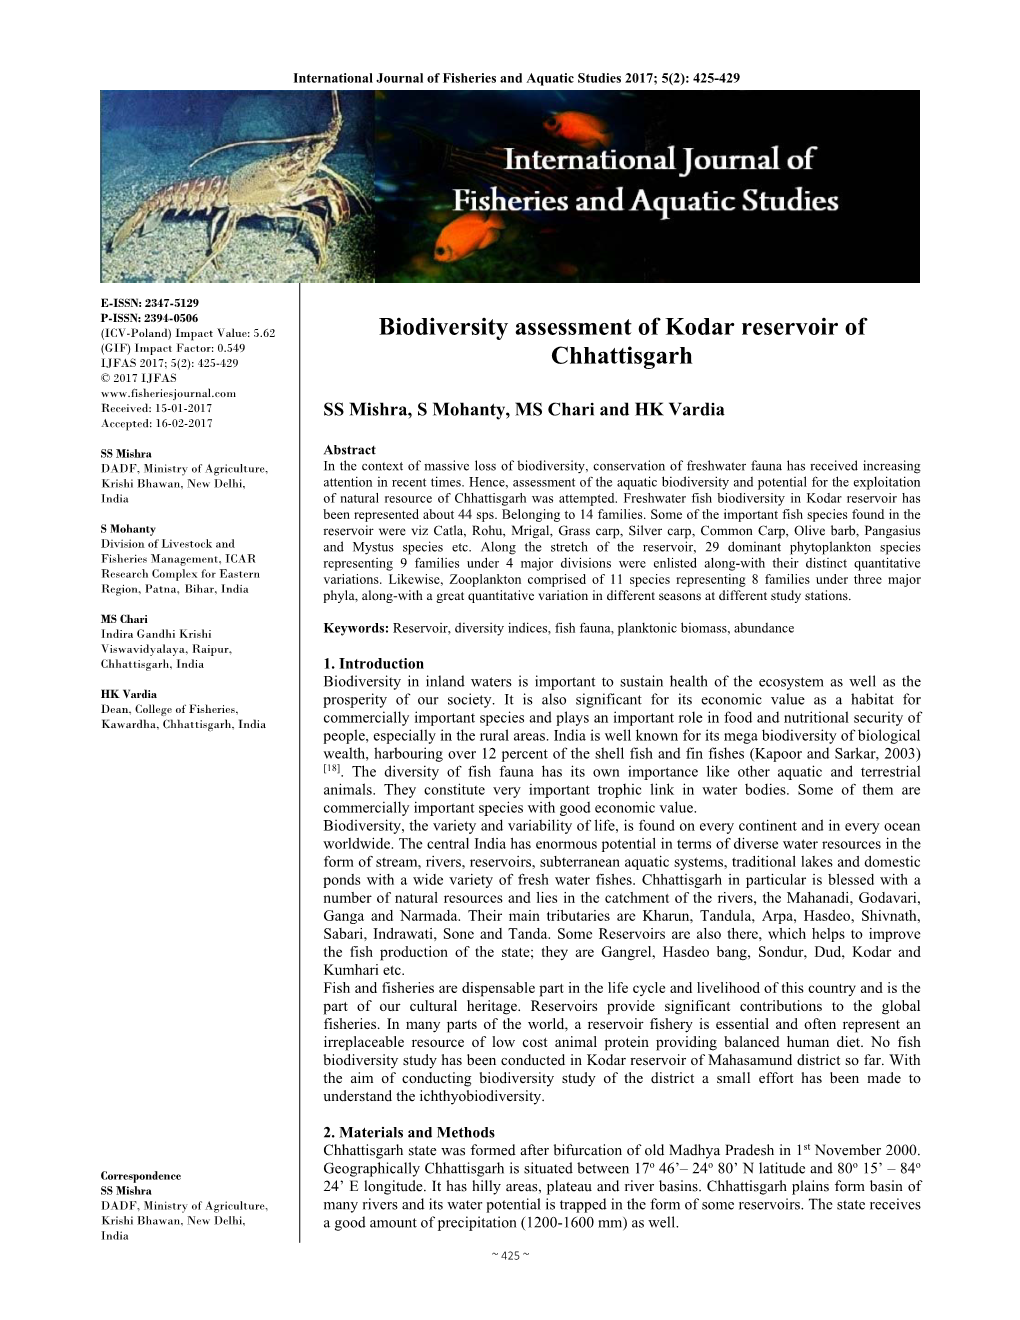 Biodiversity Assessment of Kodar Reservoir of Chhattisgarh